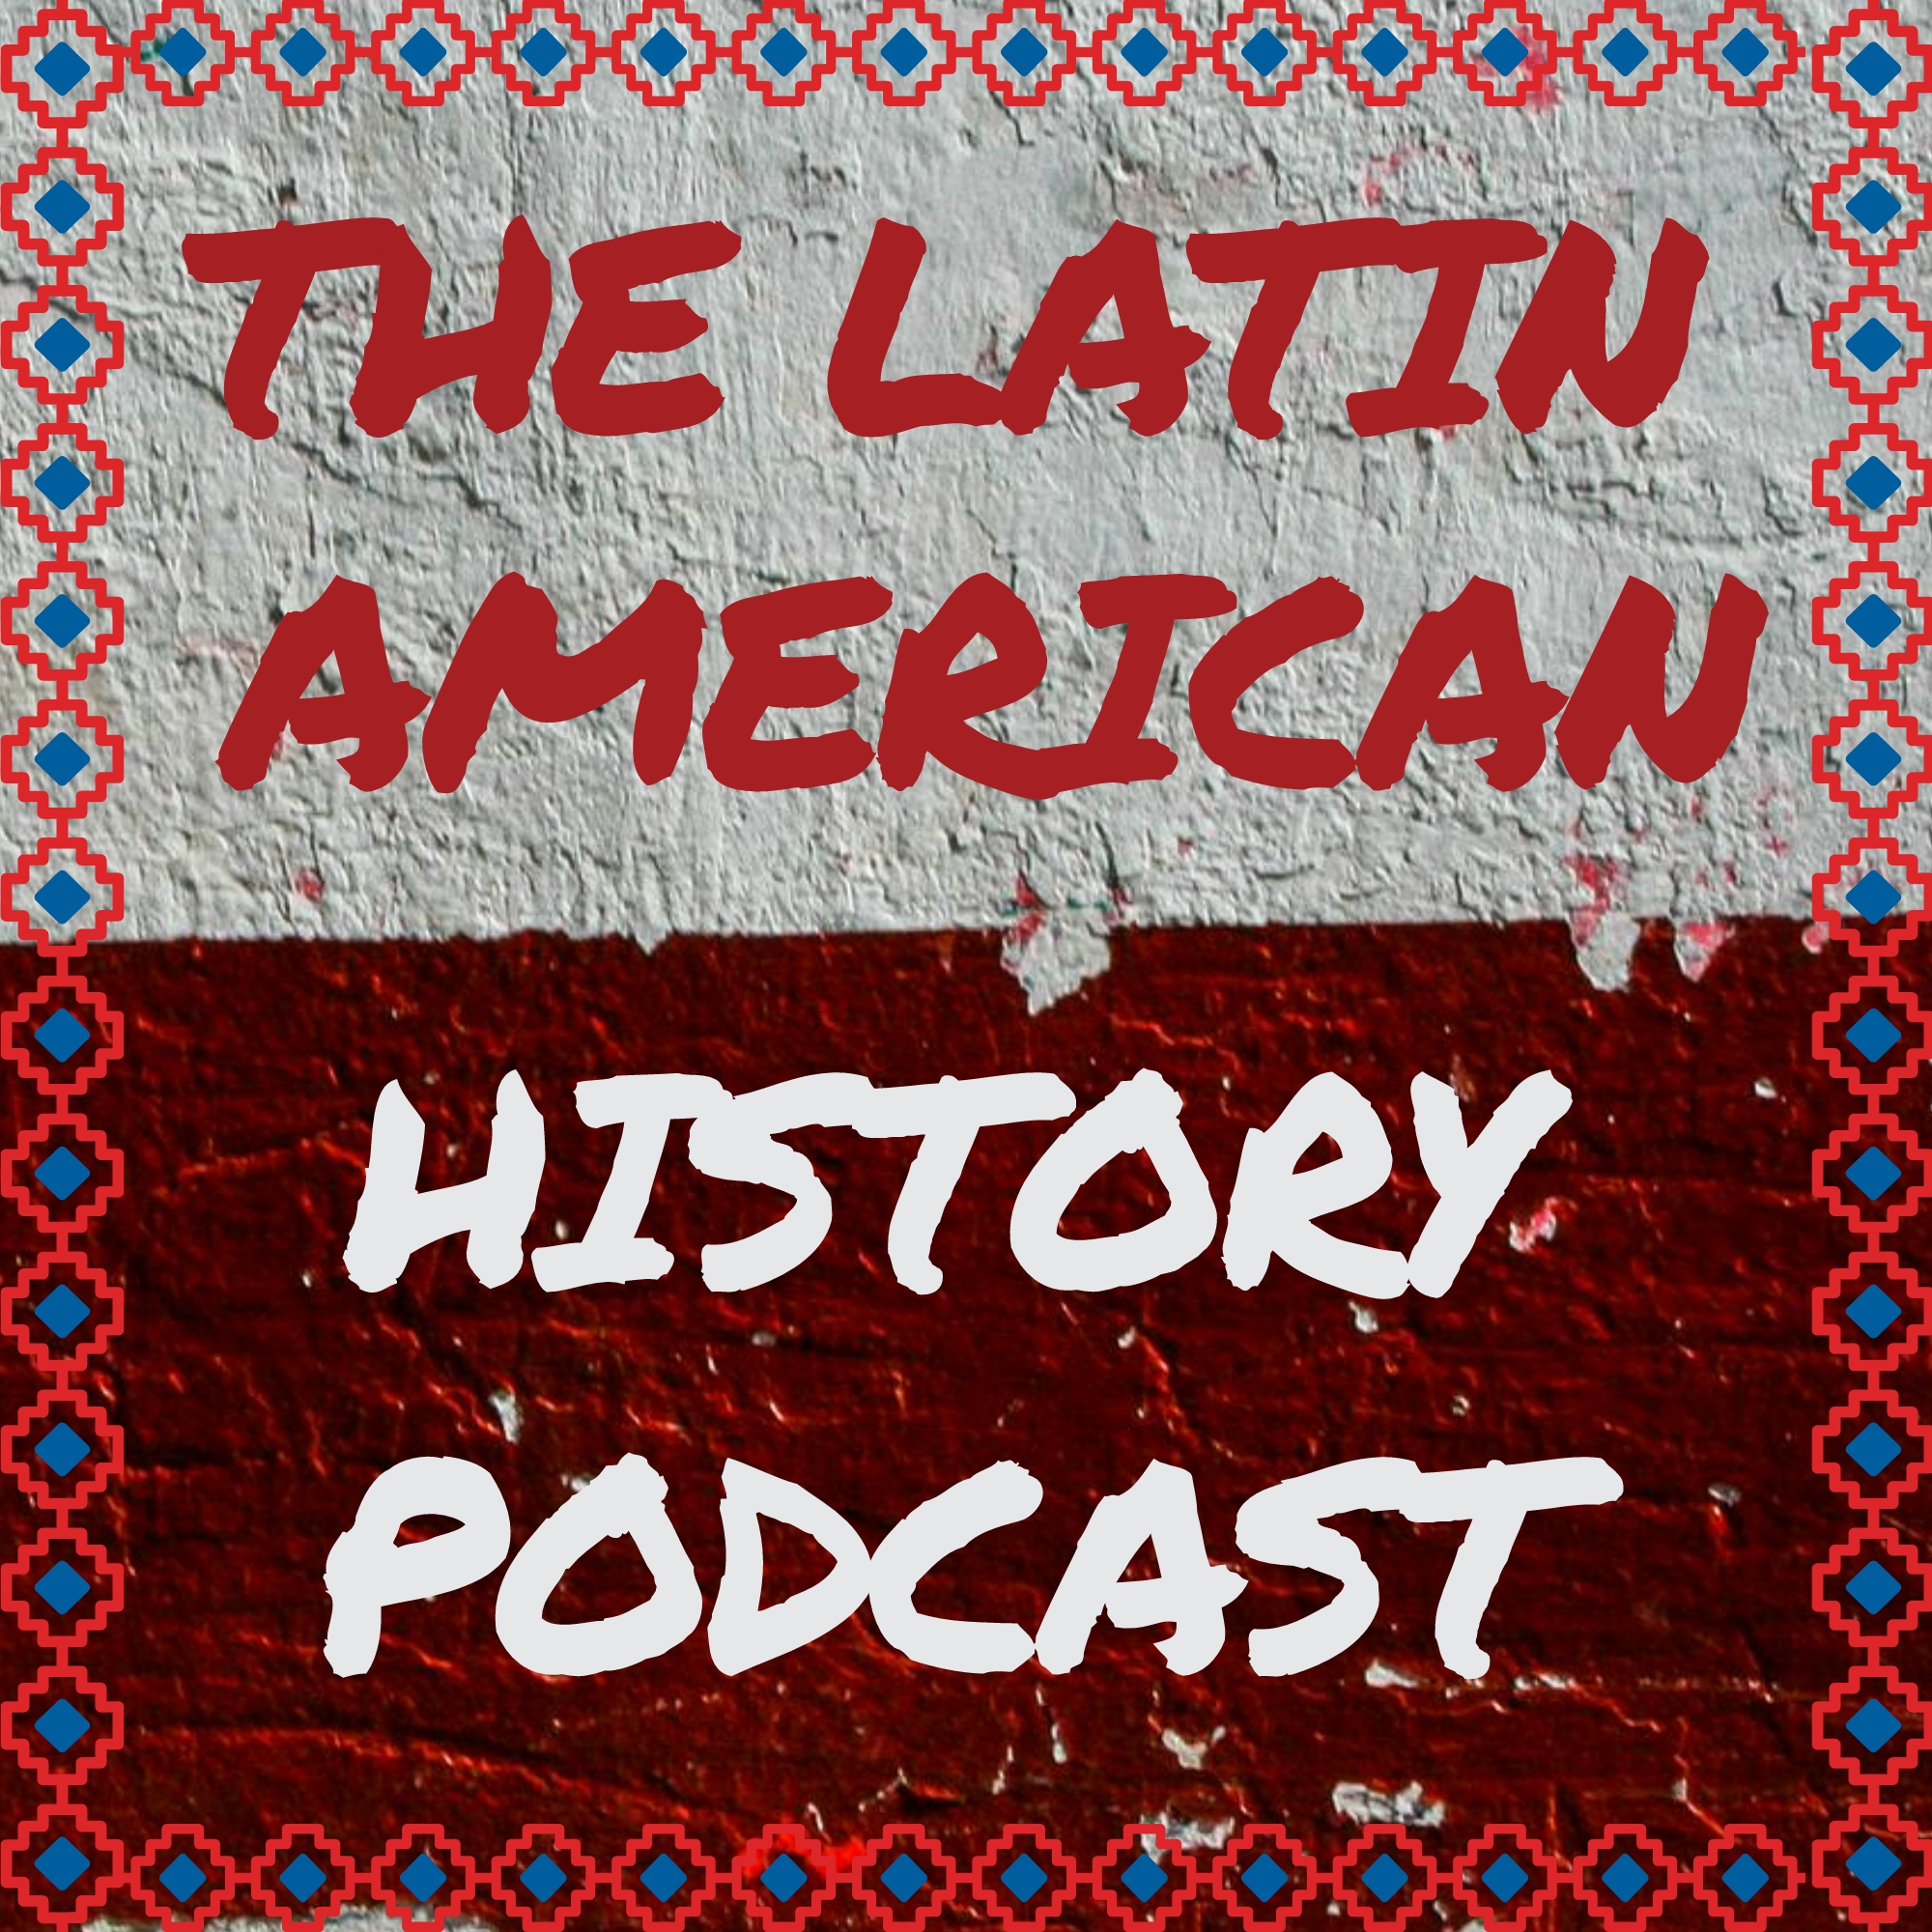 59. The Conquest of Peru - Part 1